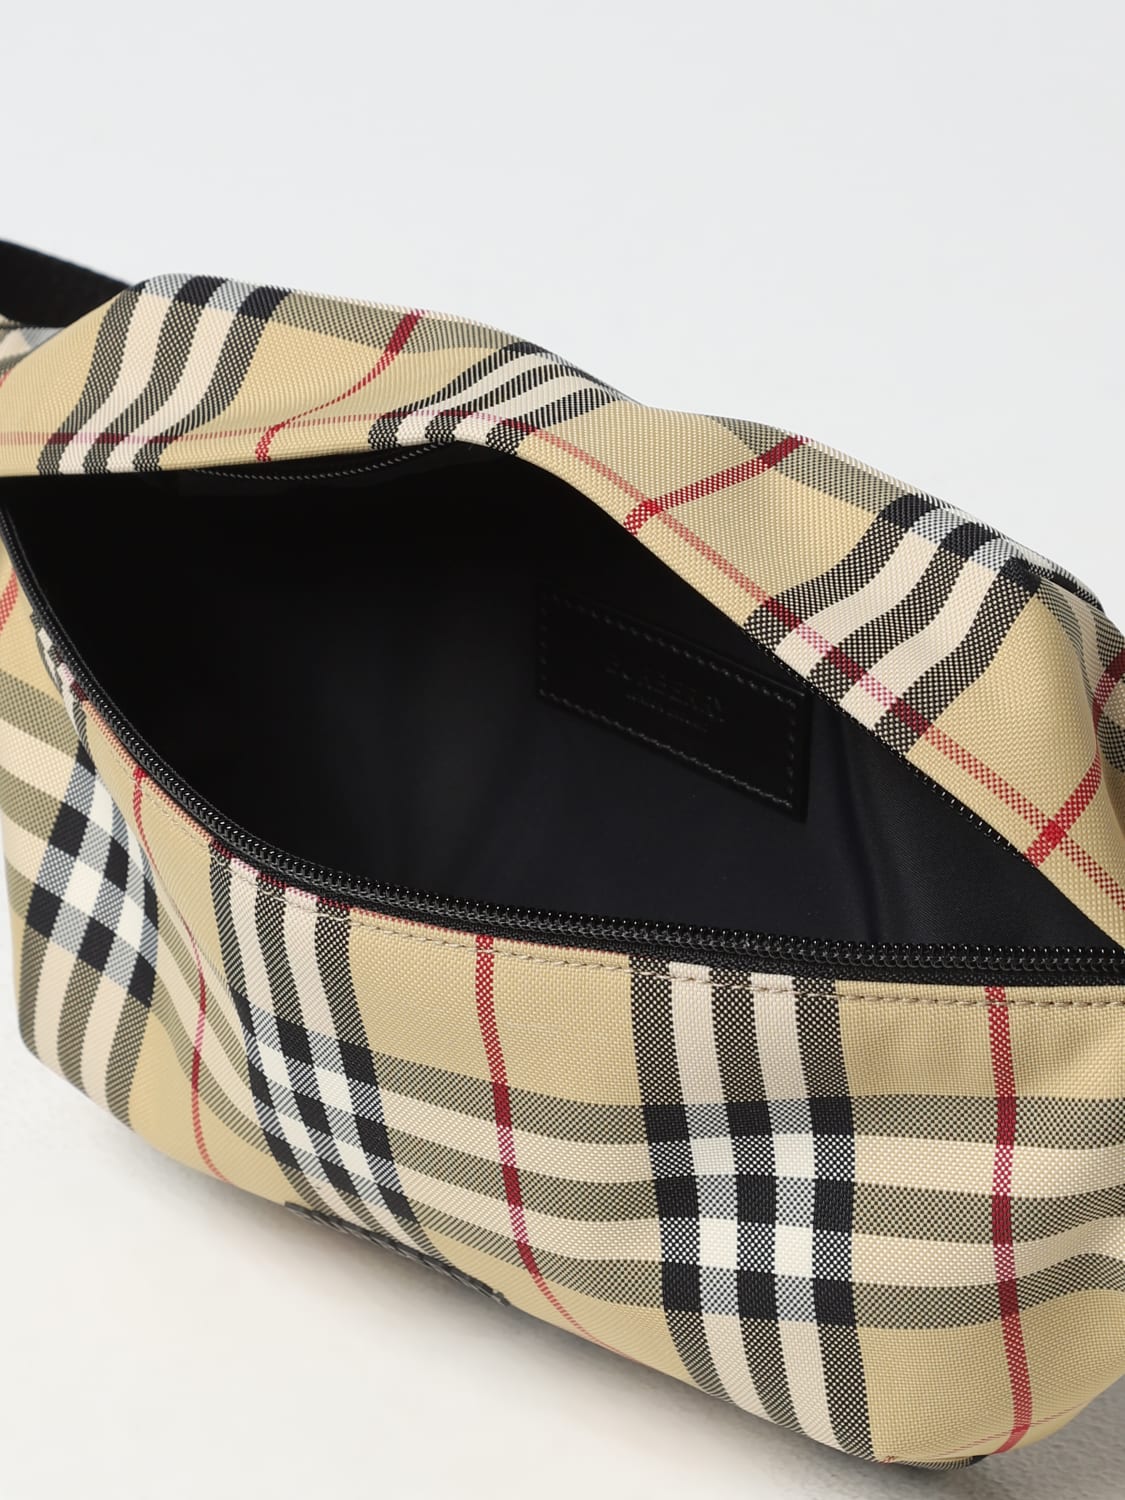 Burberry Men's Vintage Check Belt Bag/Fanny Pack